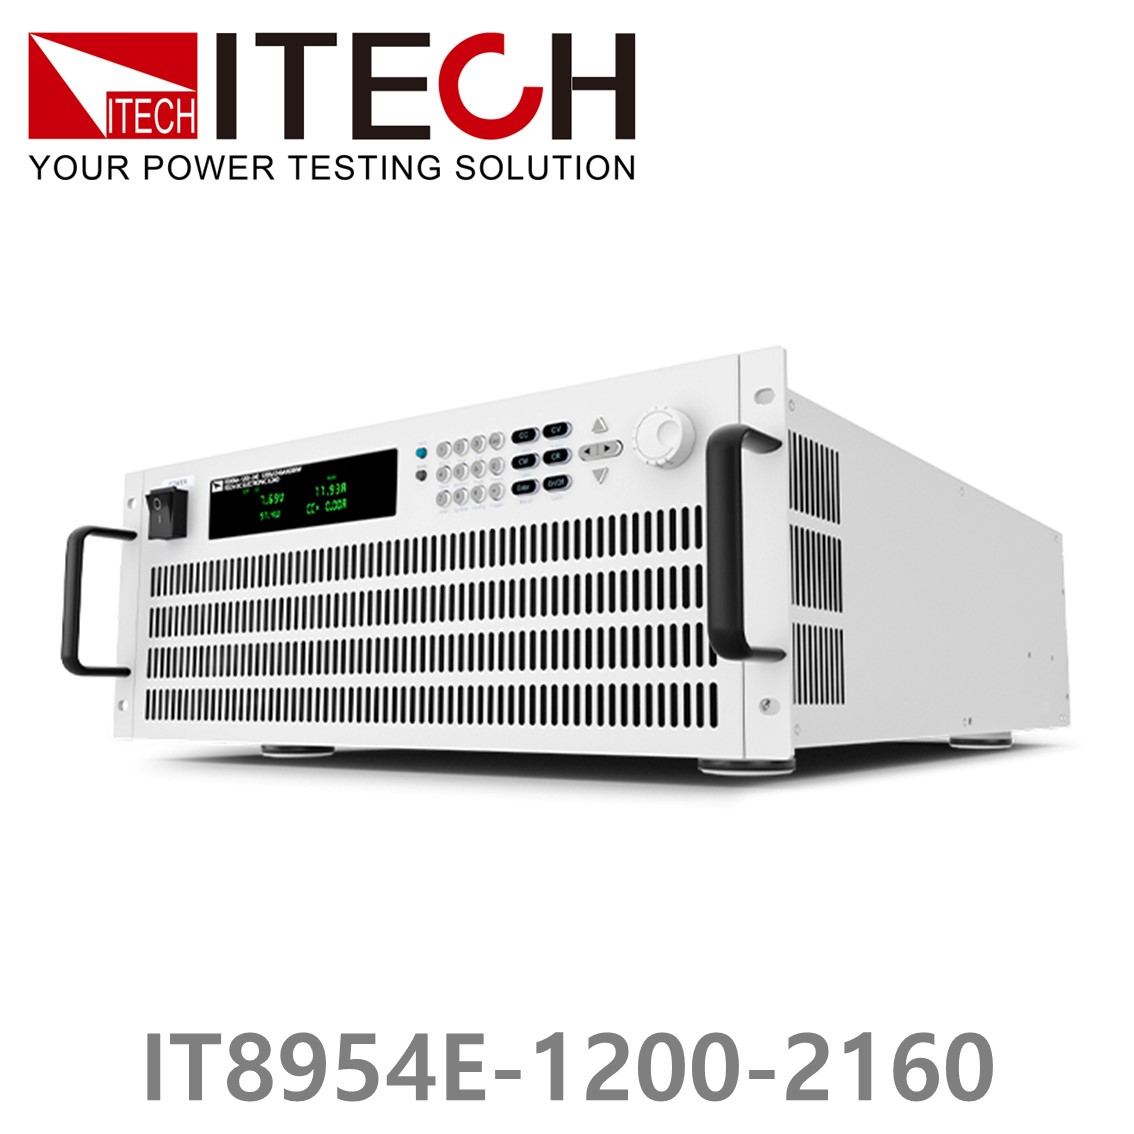 [ ITECH ] IT8954E-1200-2160  고성능 고전력 DC 전자로드 1200V/2160A/54kW (37U)